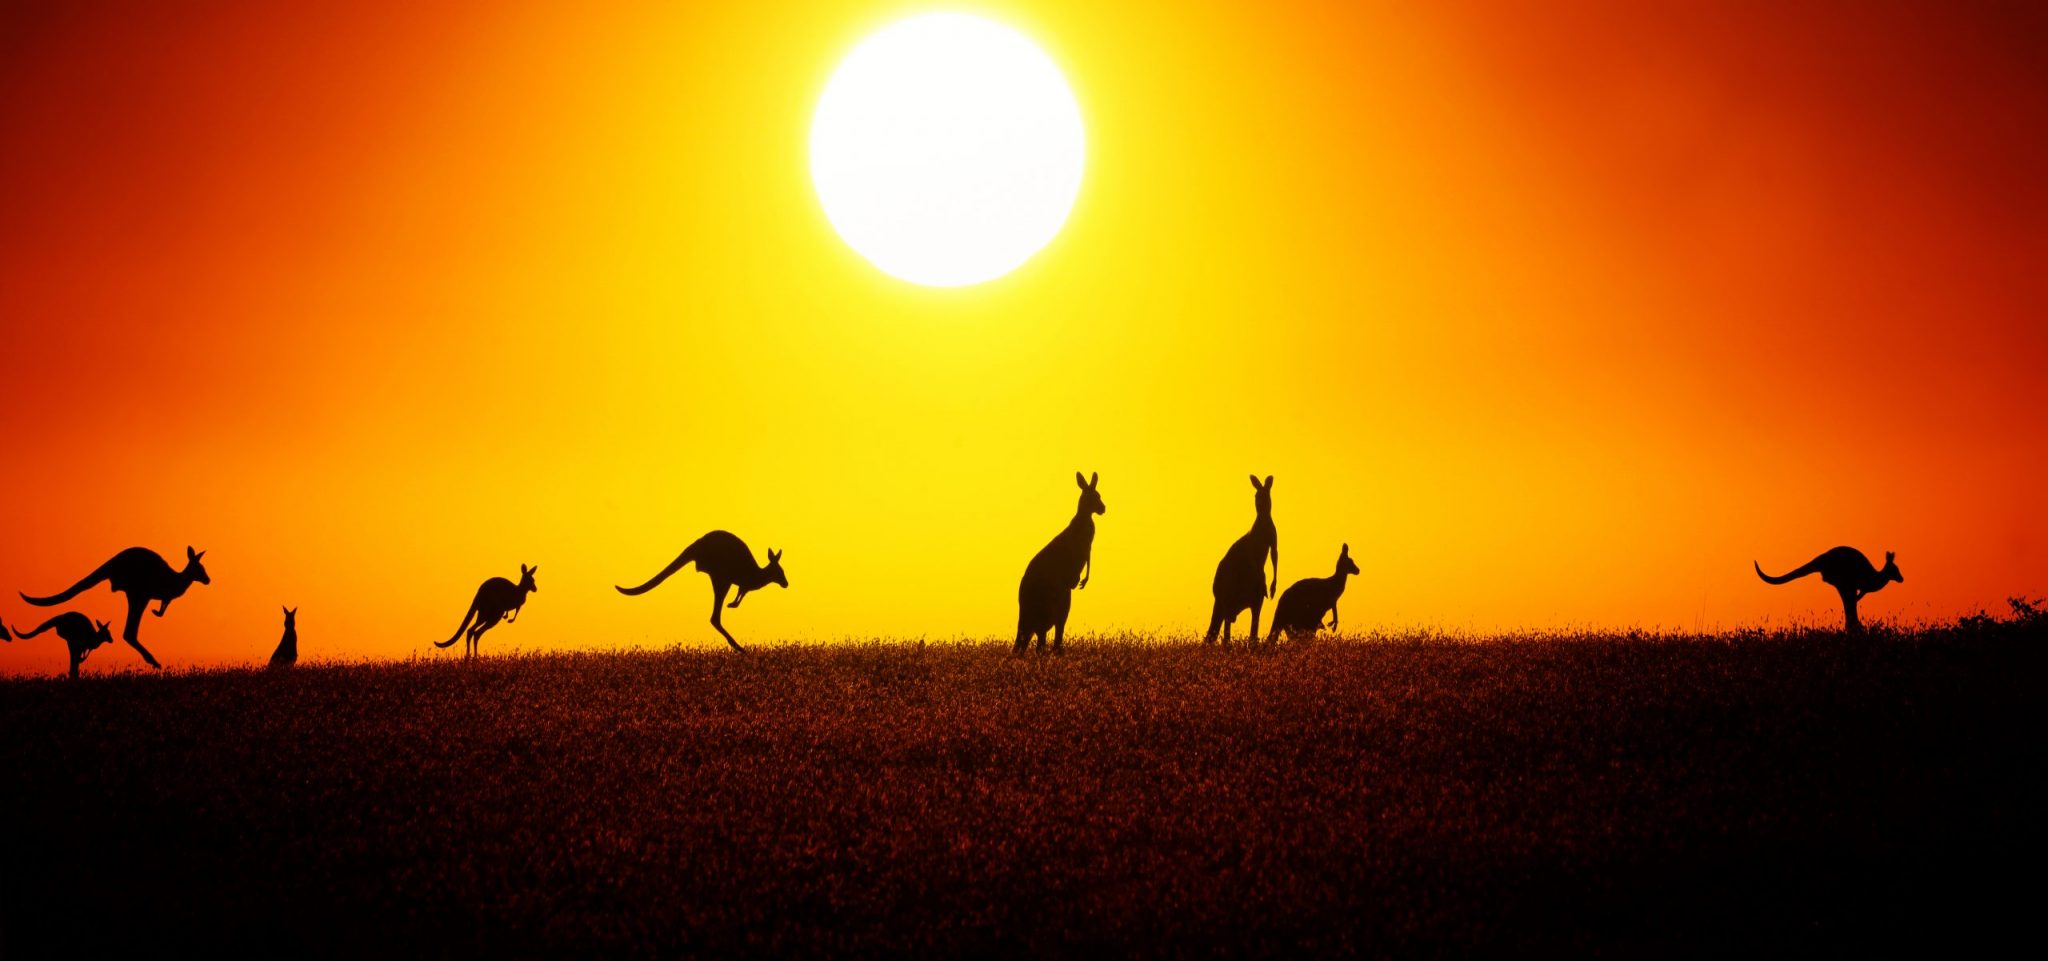 Kangaroo On Sunset